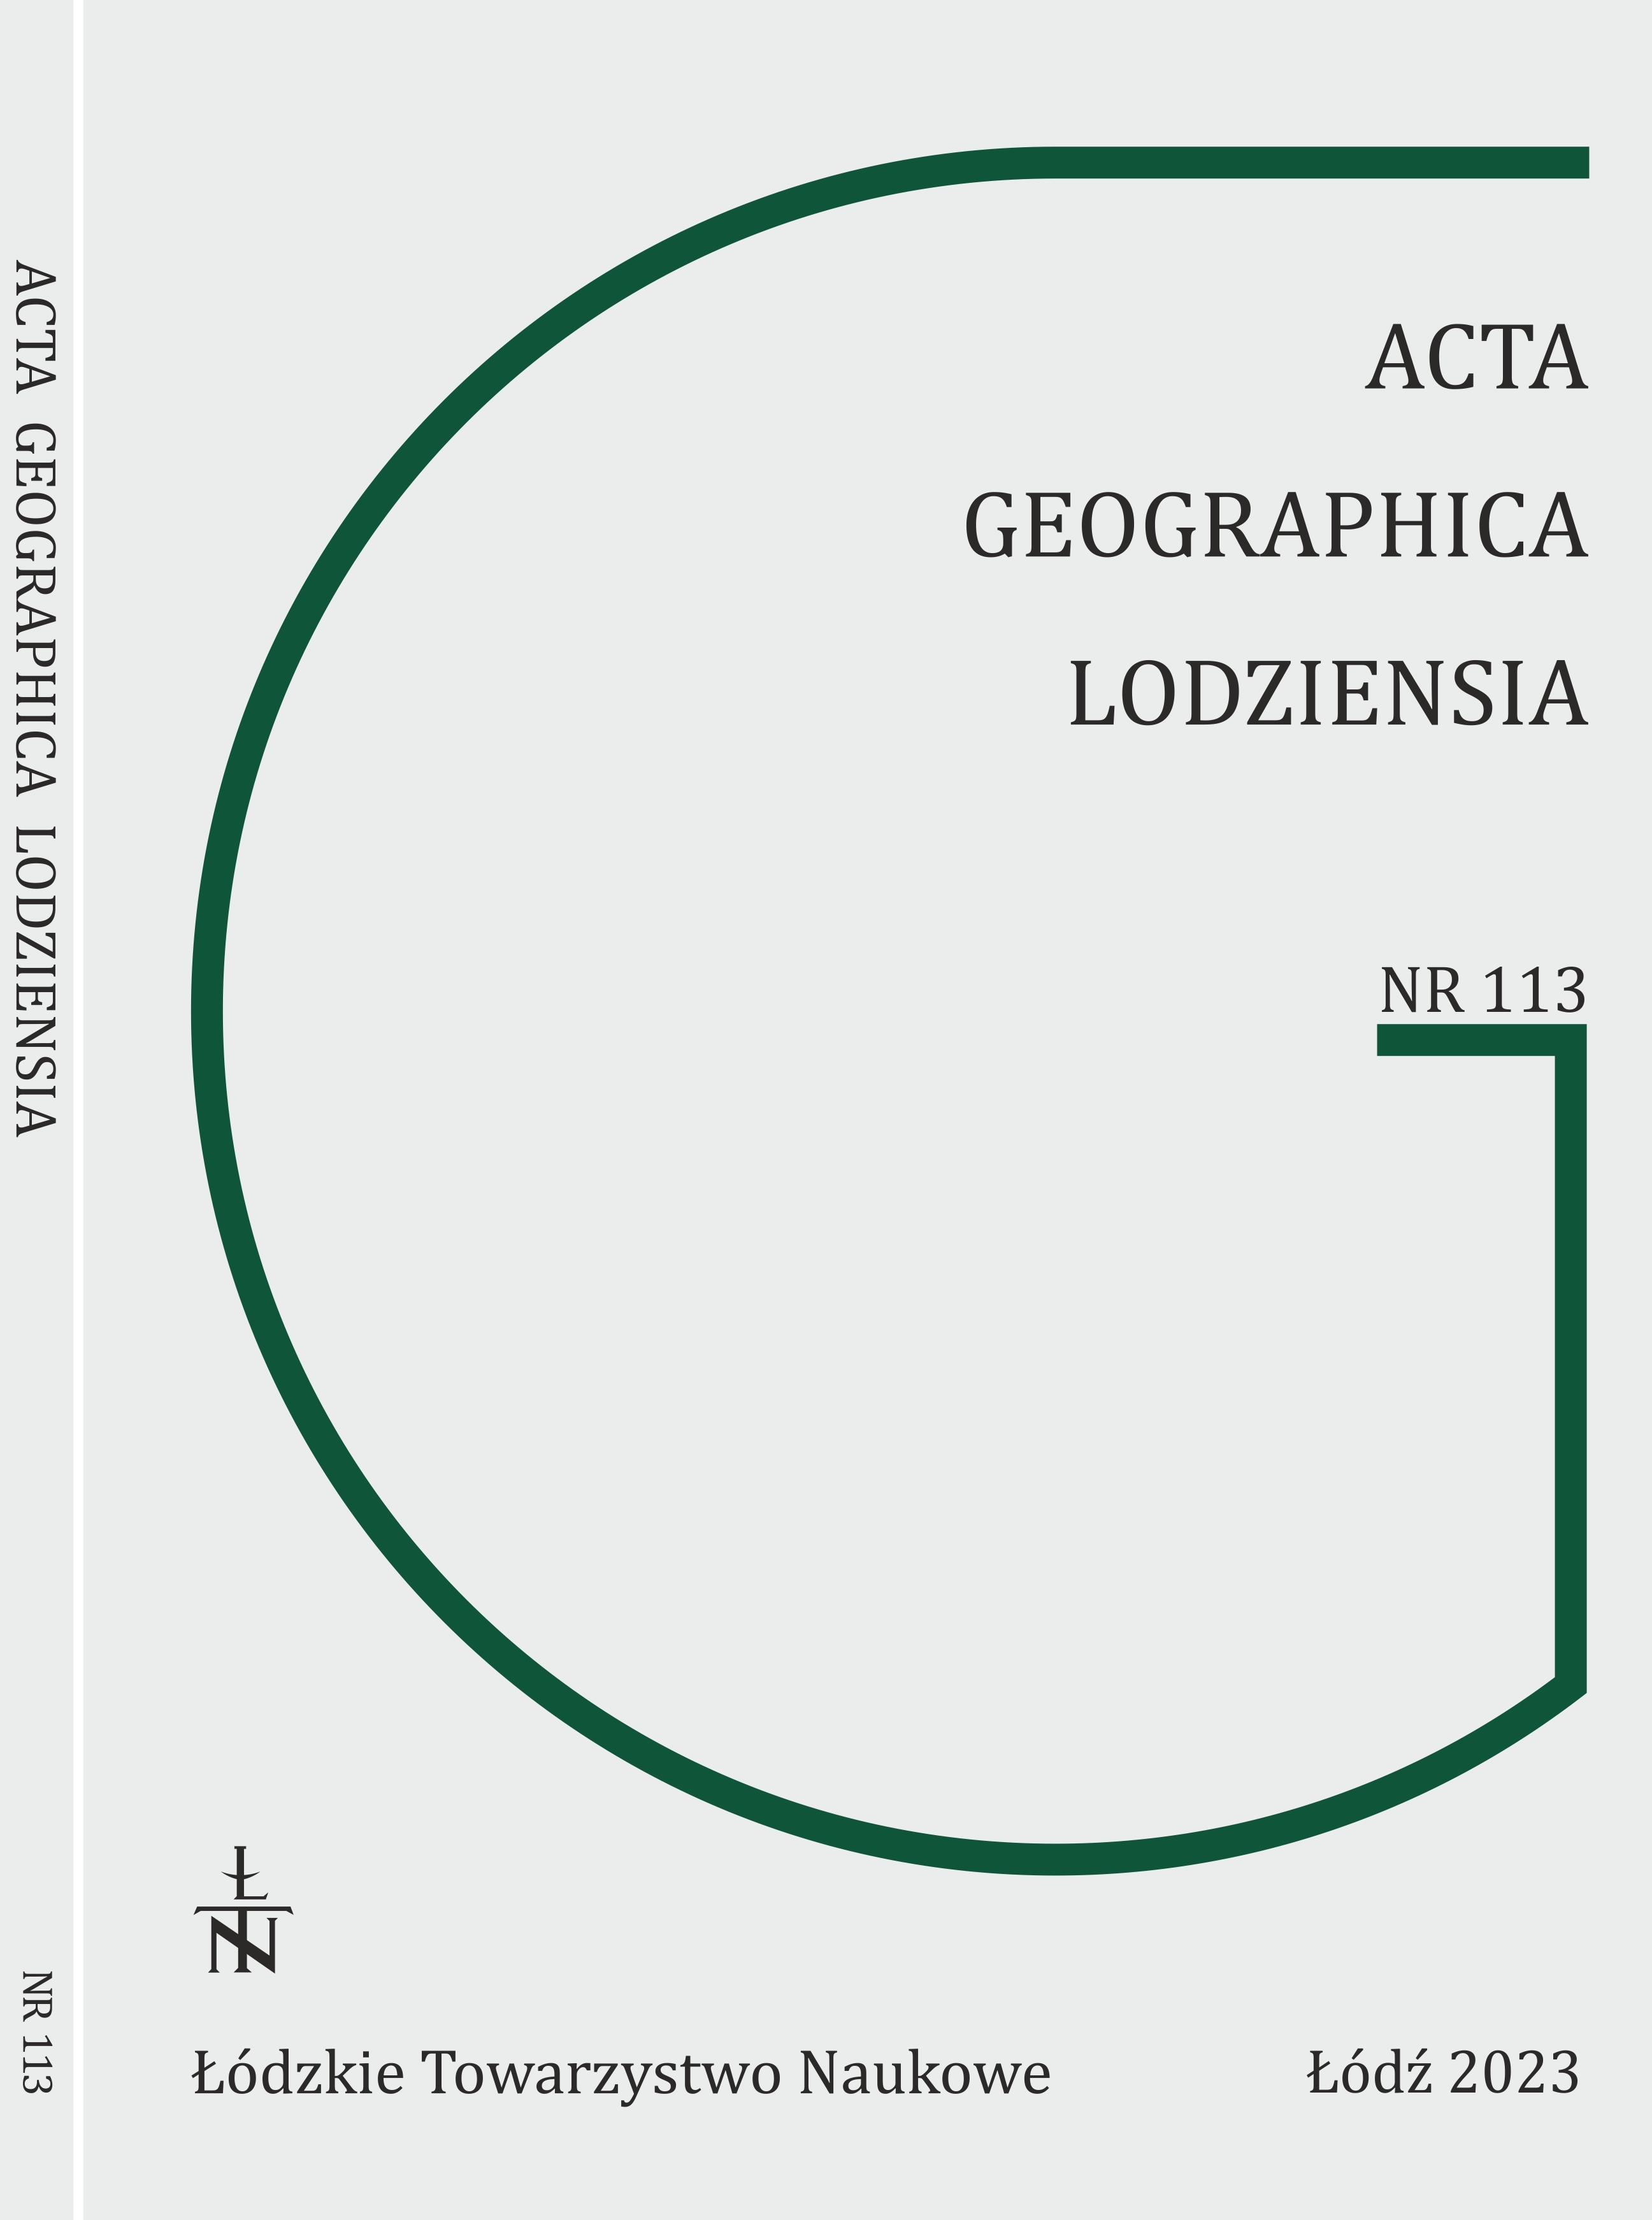 ACTA GEOGRAPHICA LODZIENSIA – W 75-LECIE ISTNIENIA
CZASOPISMA